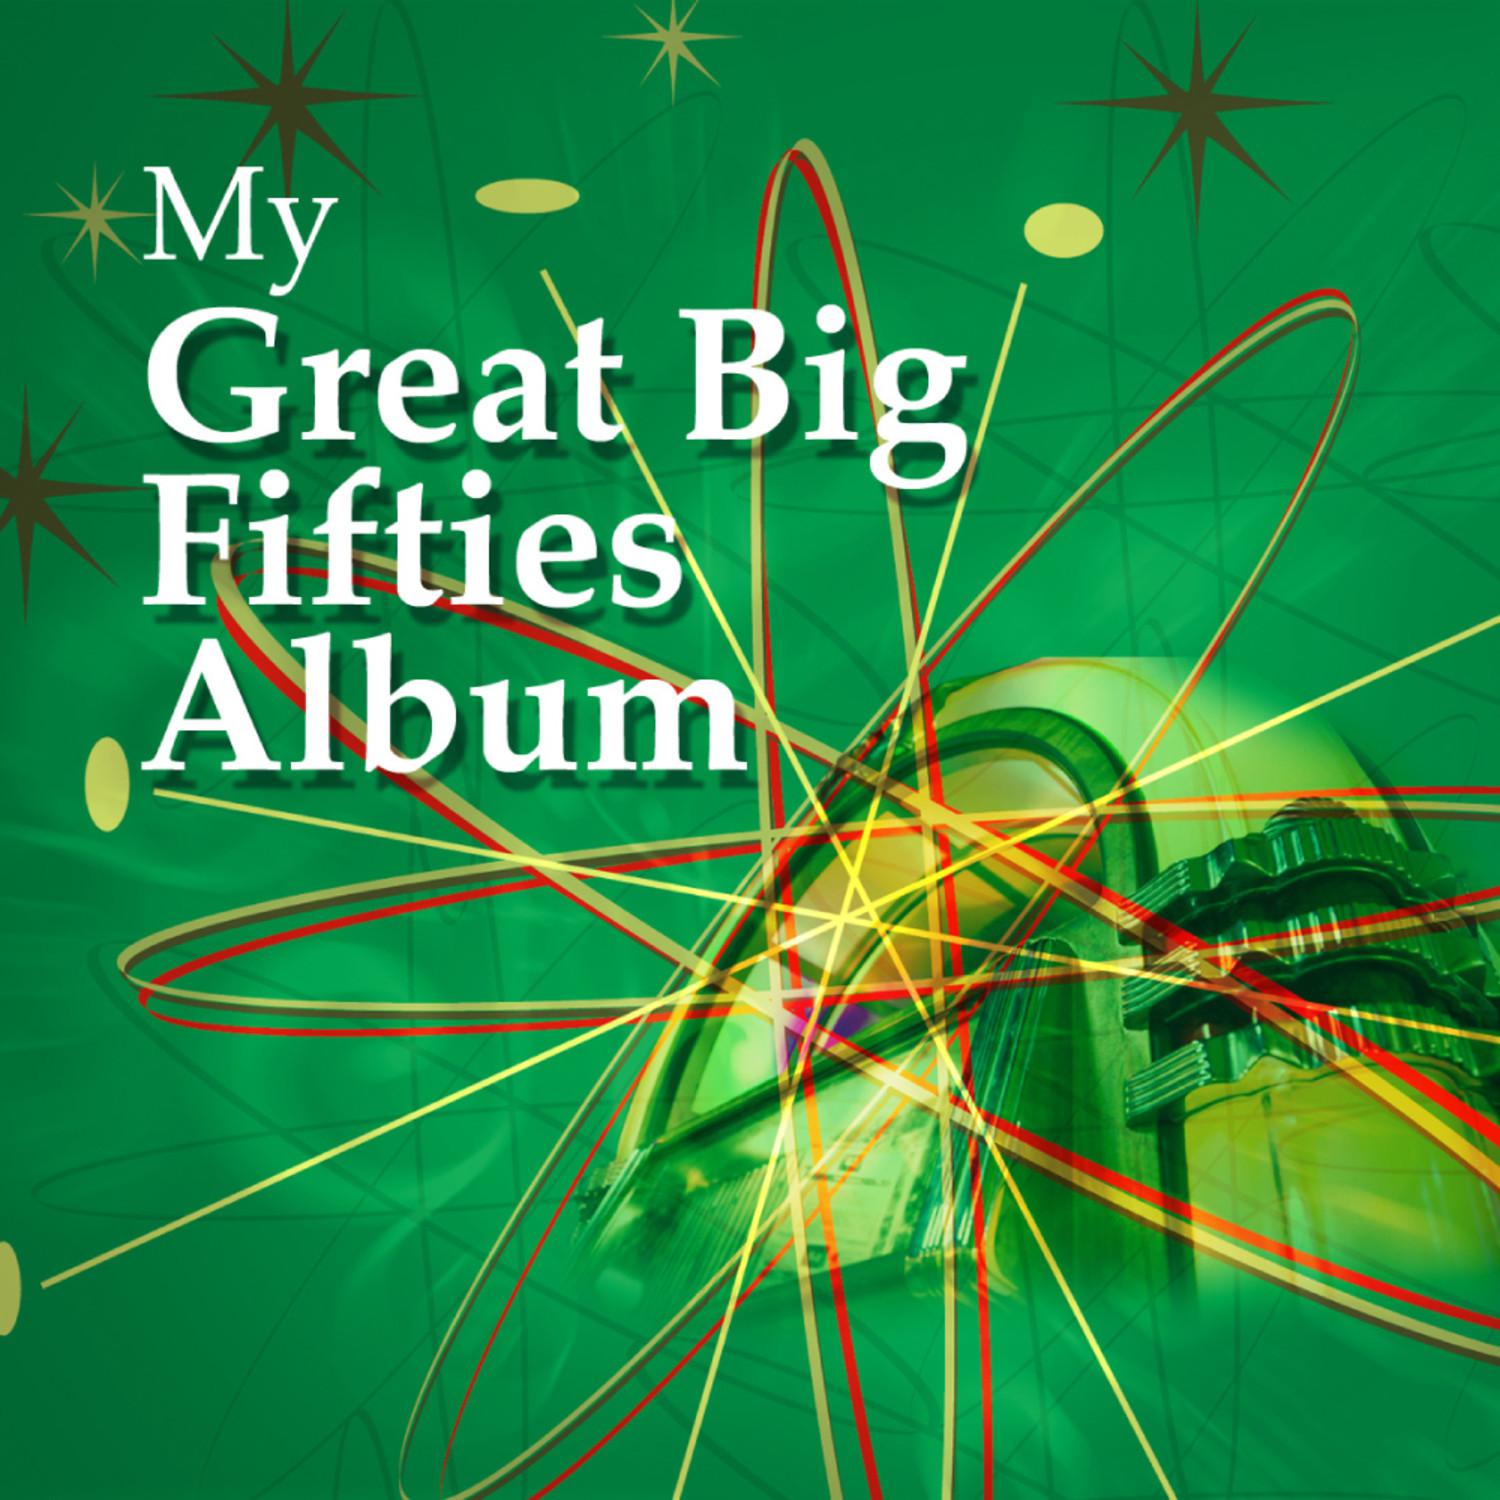 My Great Big Fifties Album